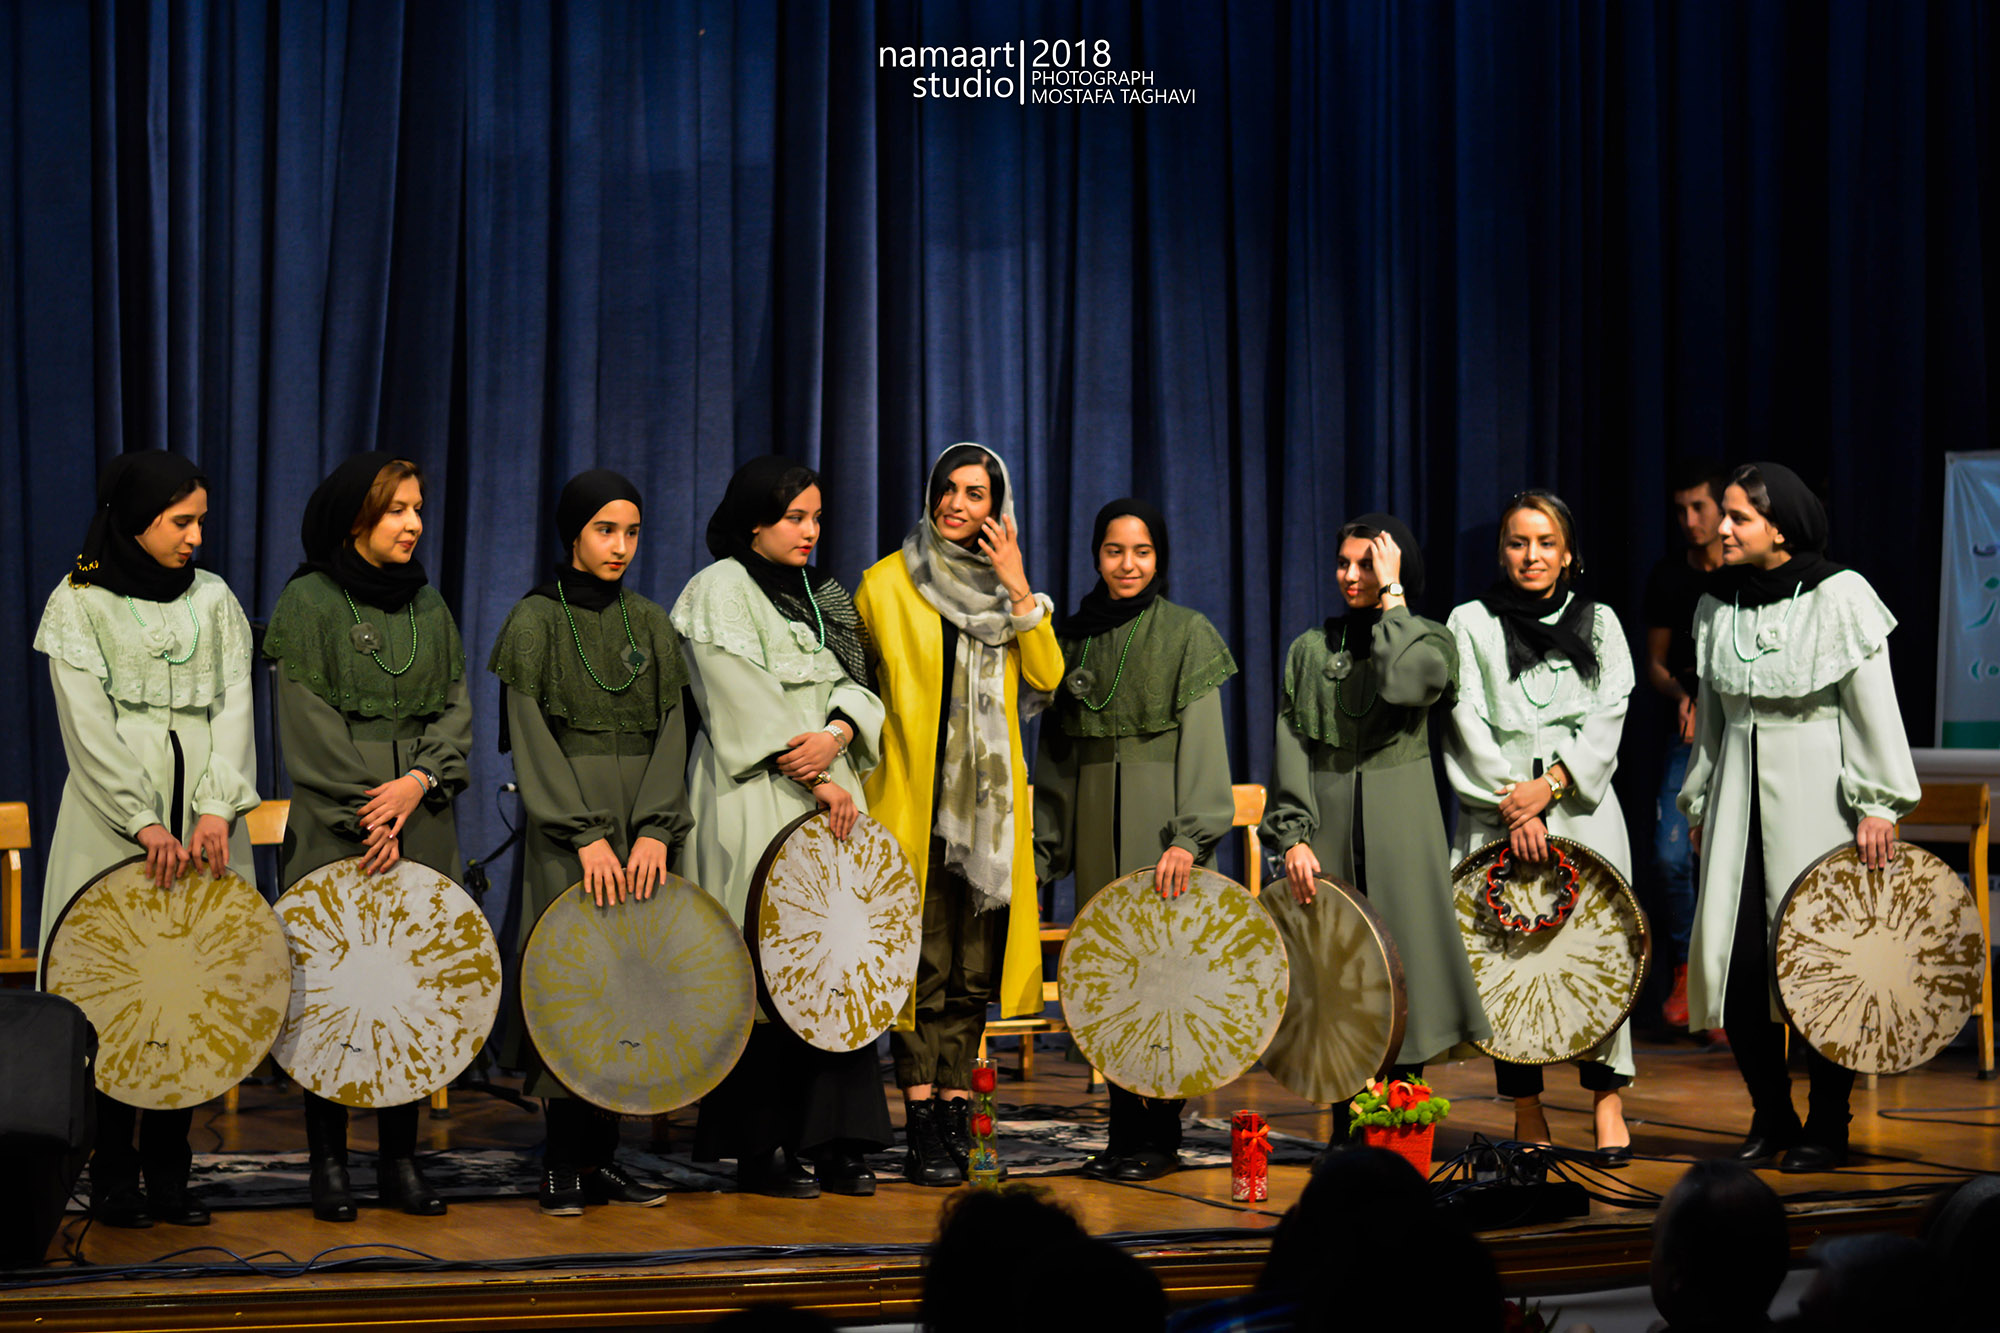 آموزشگاه موسیقی غرب تهران - آموزشگاه موسیقی دبیرزاده